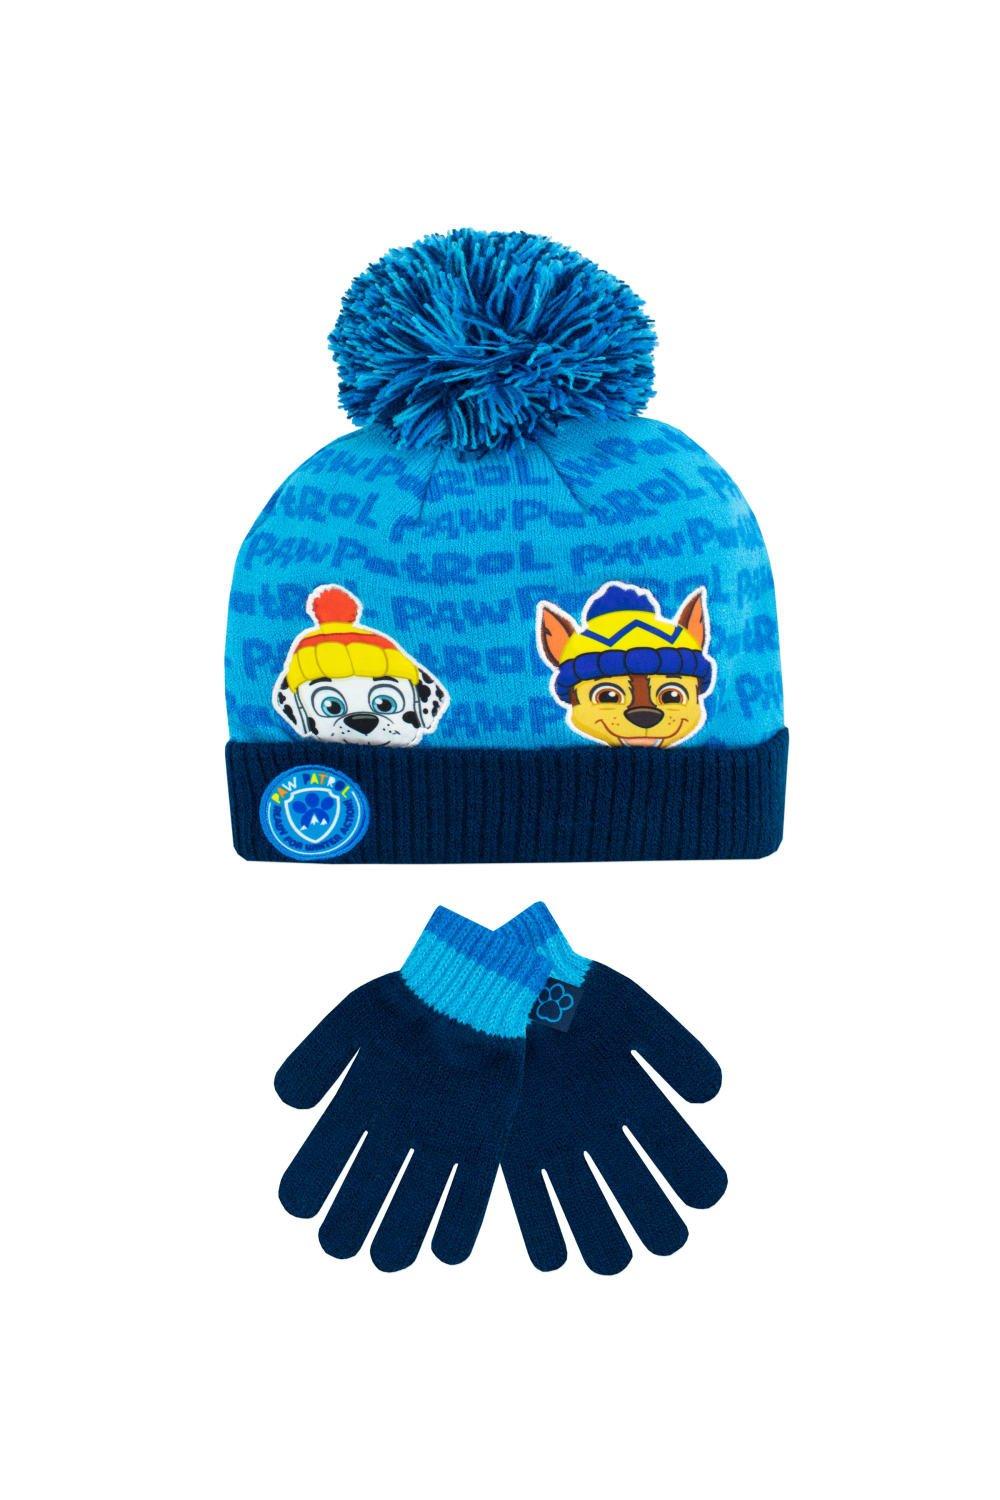 Детский комплект шапки и перчаток Paw Patrol, синий разноцветная плюшевая шапка унисекс для взрослых праздничная рождественская шапка шапка с помпоном для рождественской вечеринки